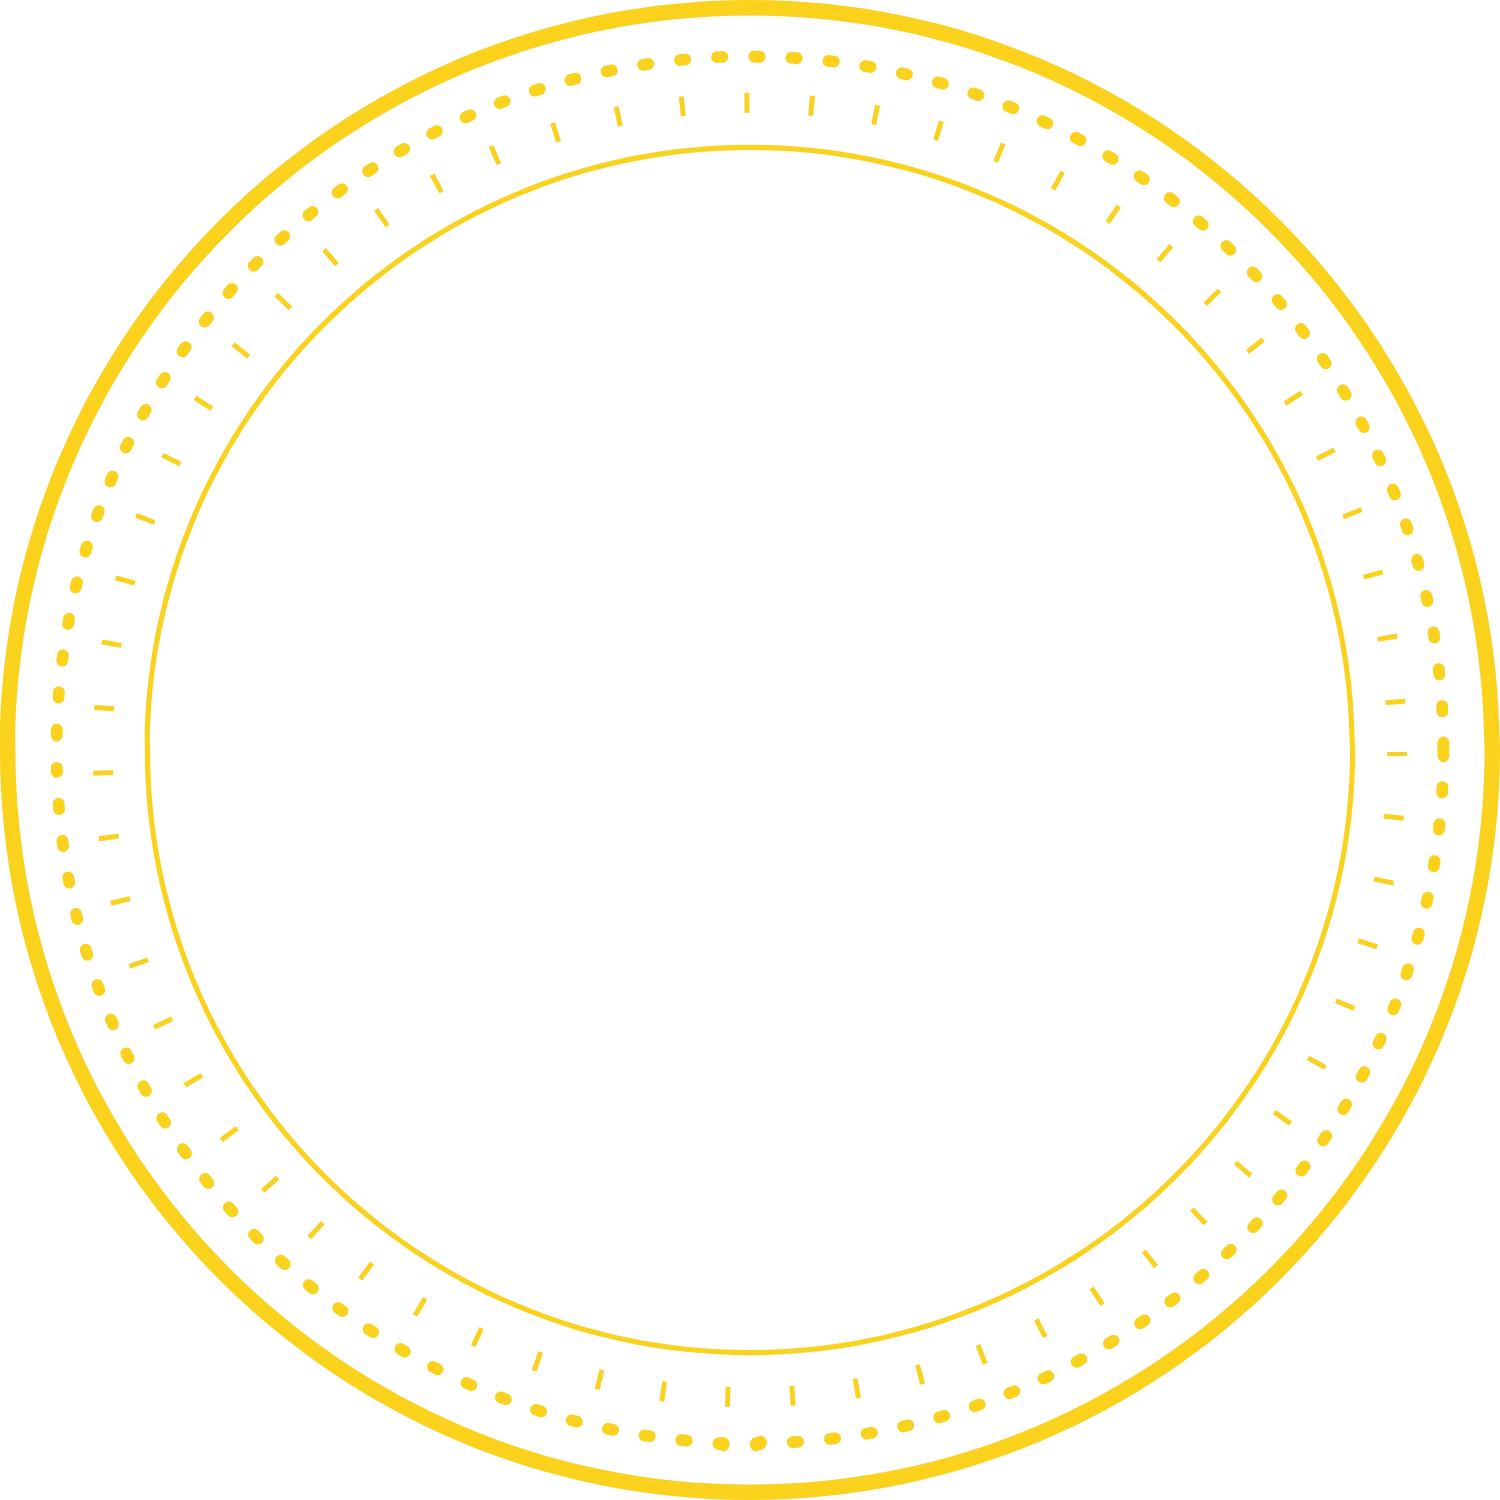 Pub Oxford logo